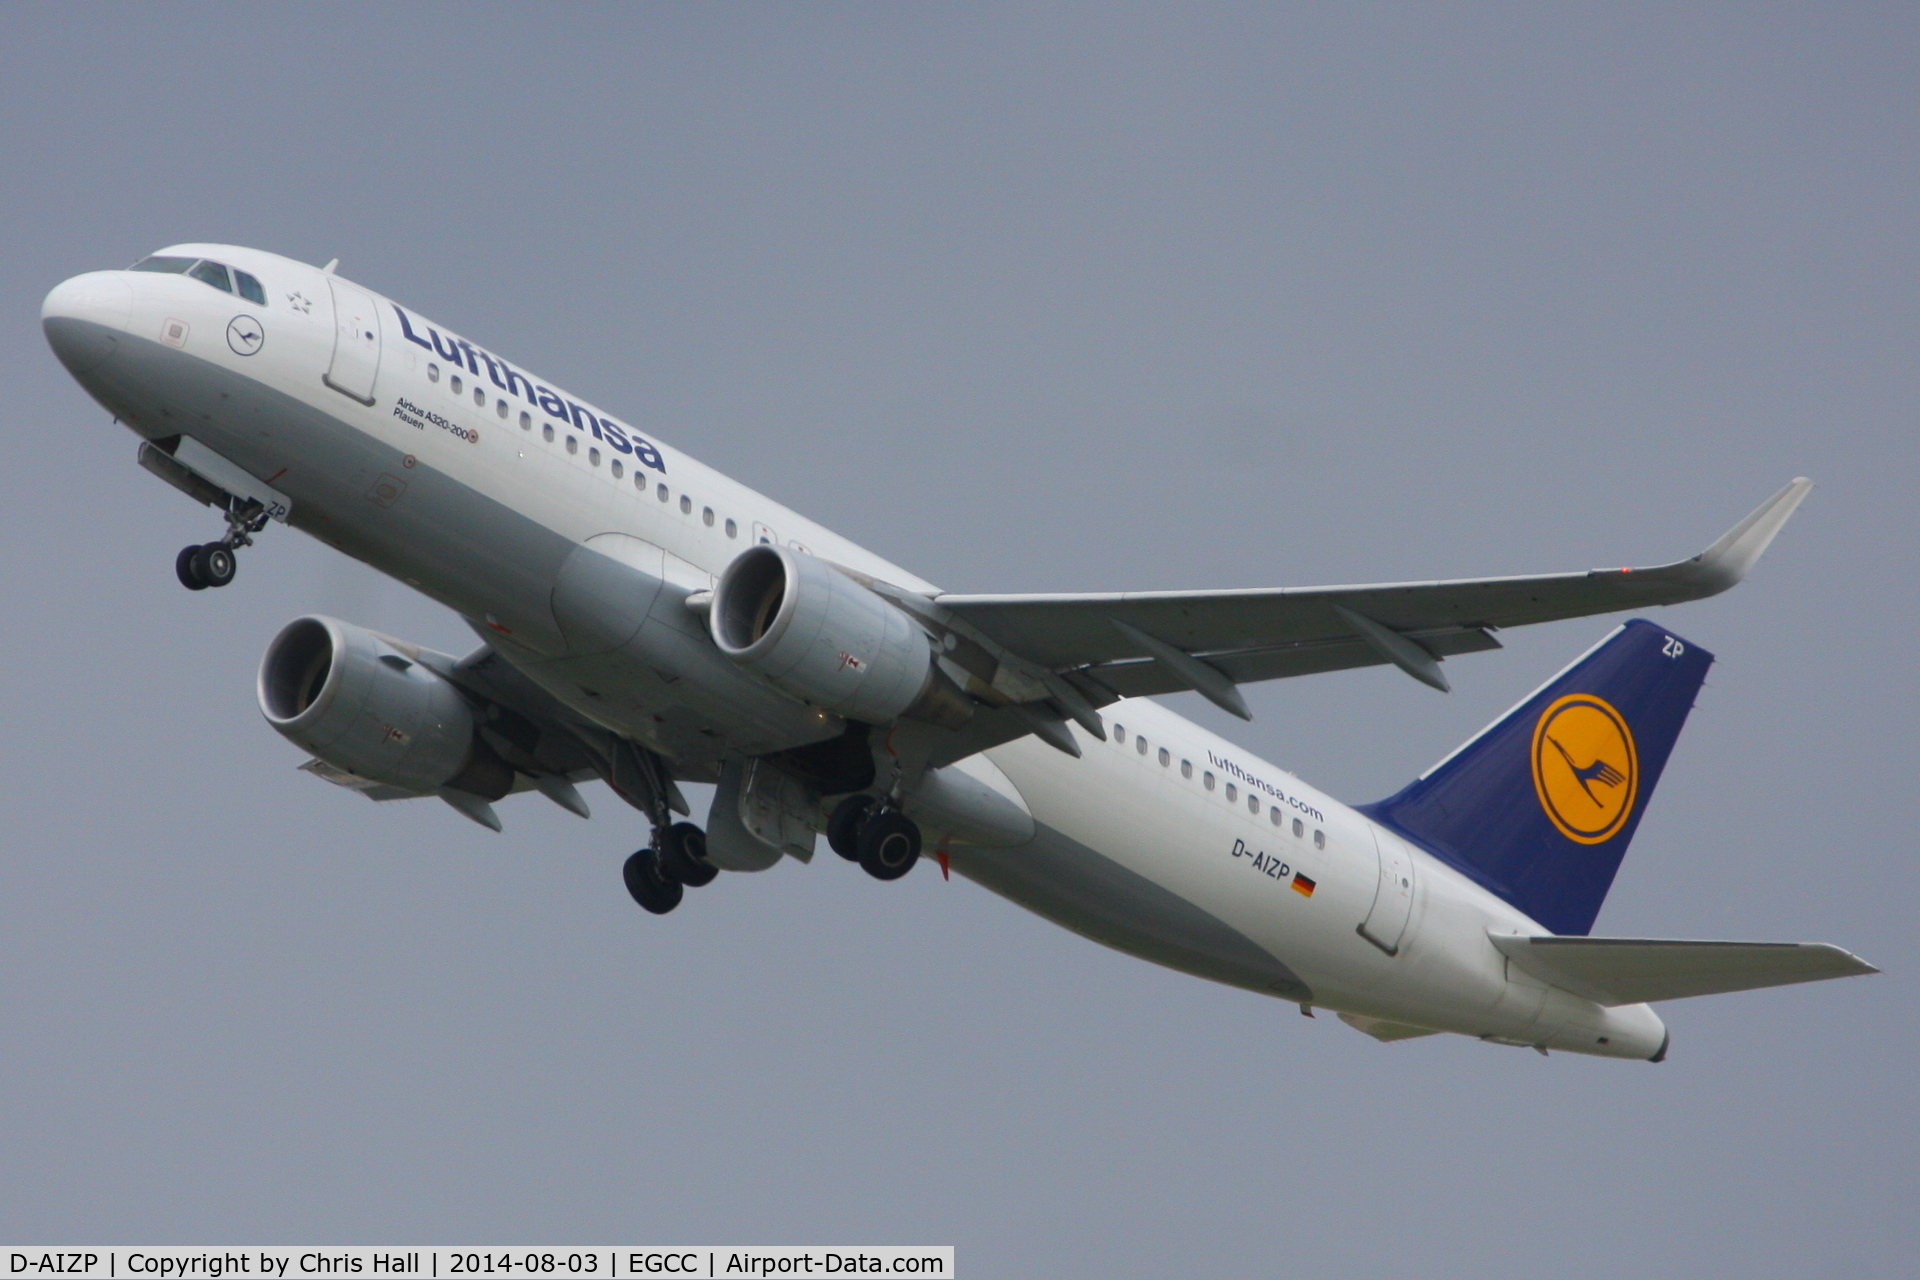 D-AIZP, 2013 Airbus A320-214 C/N 5487, Lufthansa